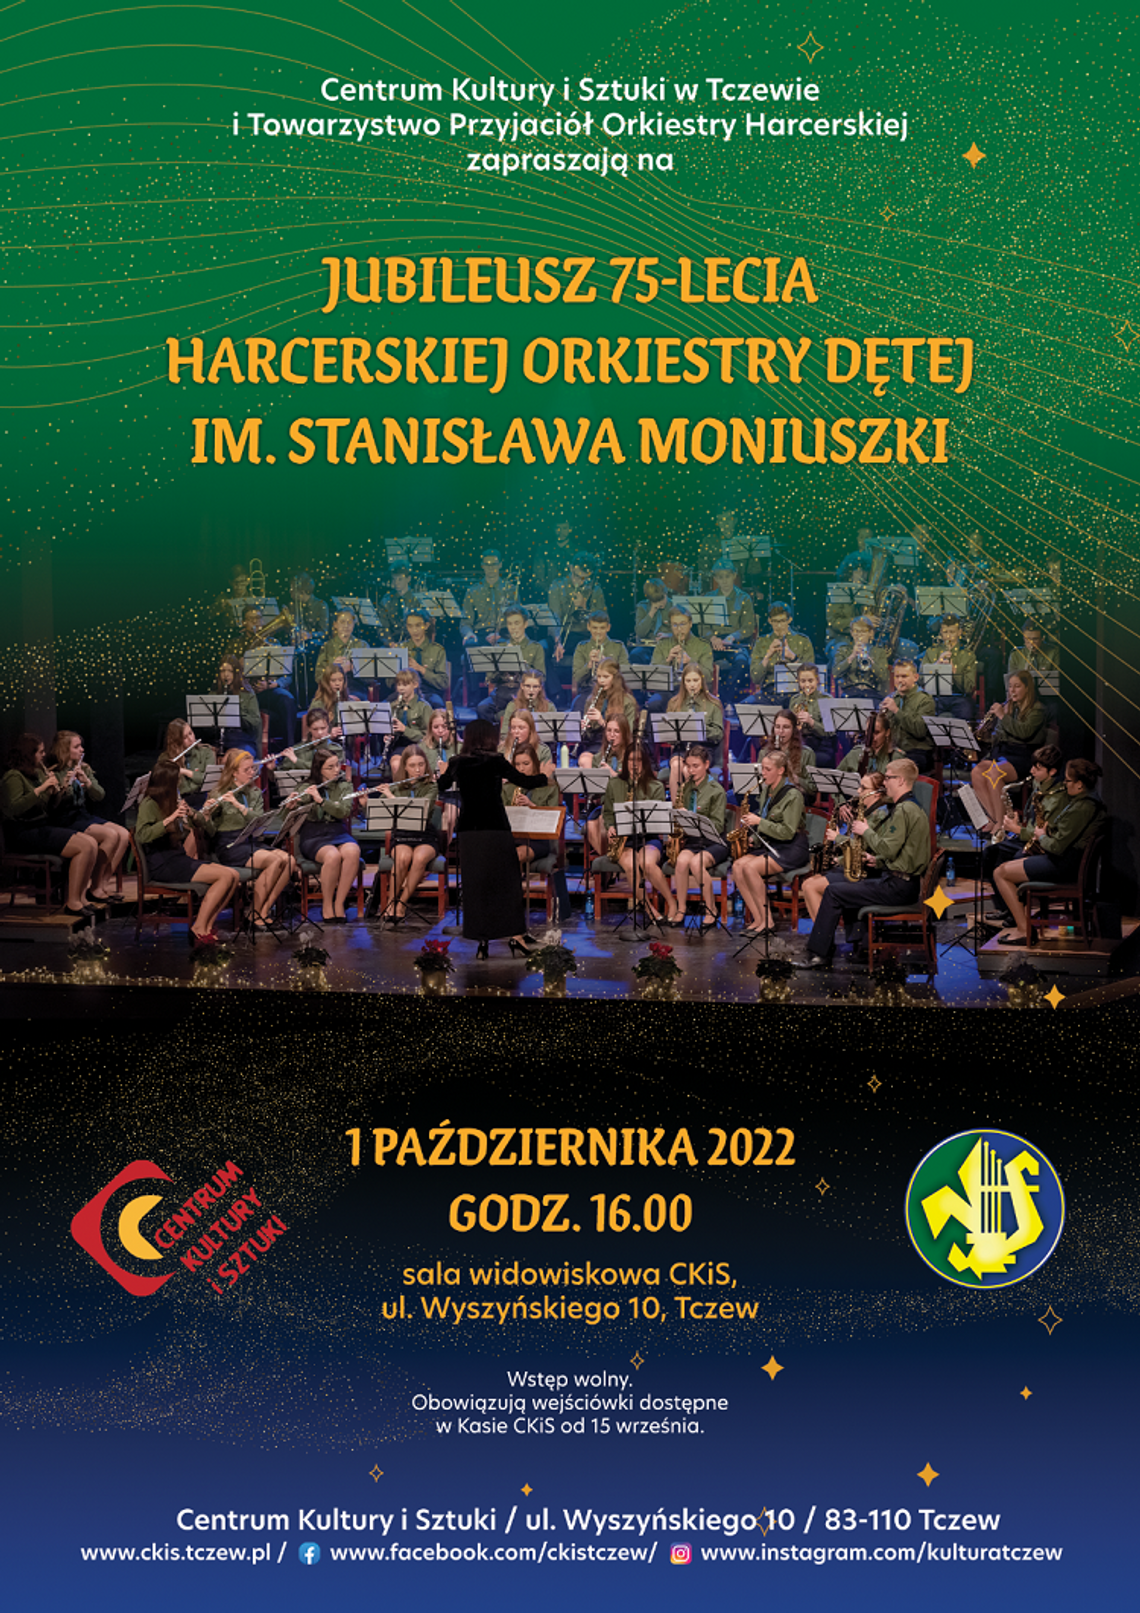 Tczew. Jubileusz 75-lecia Harcerskiej Orkiestry Dętej im. Stanisława Moniuszki